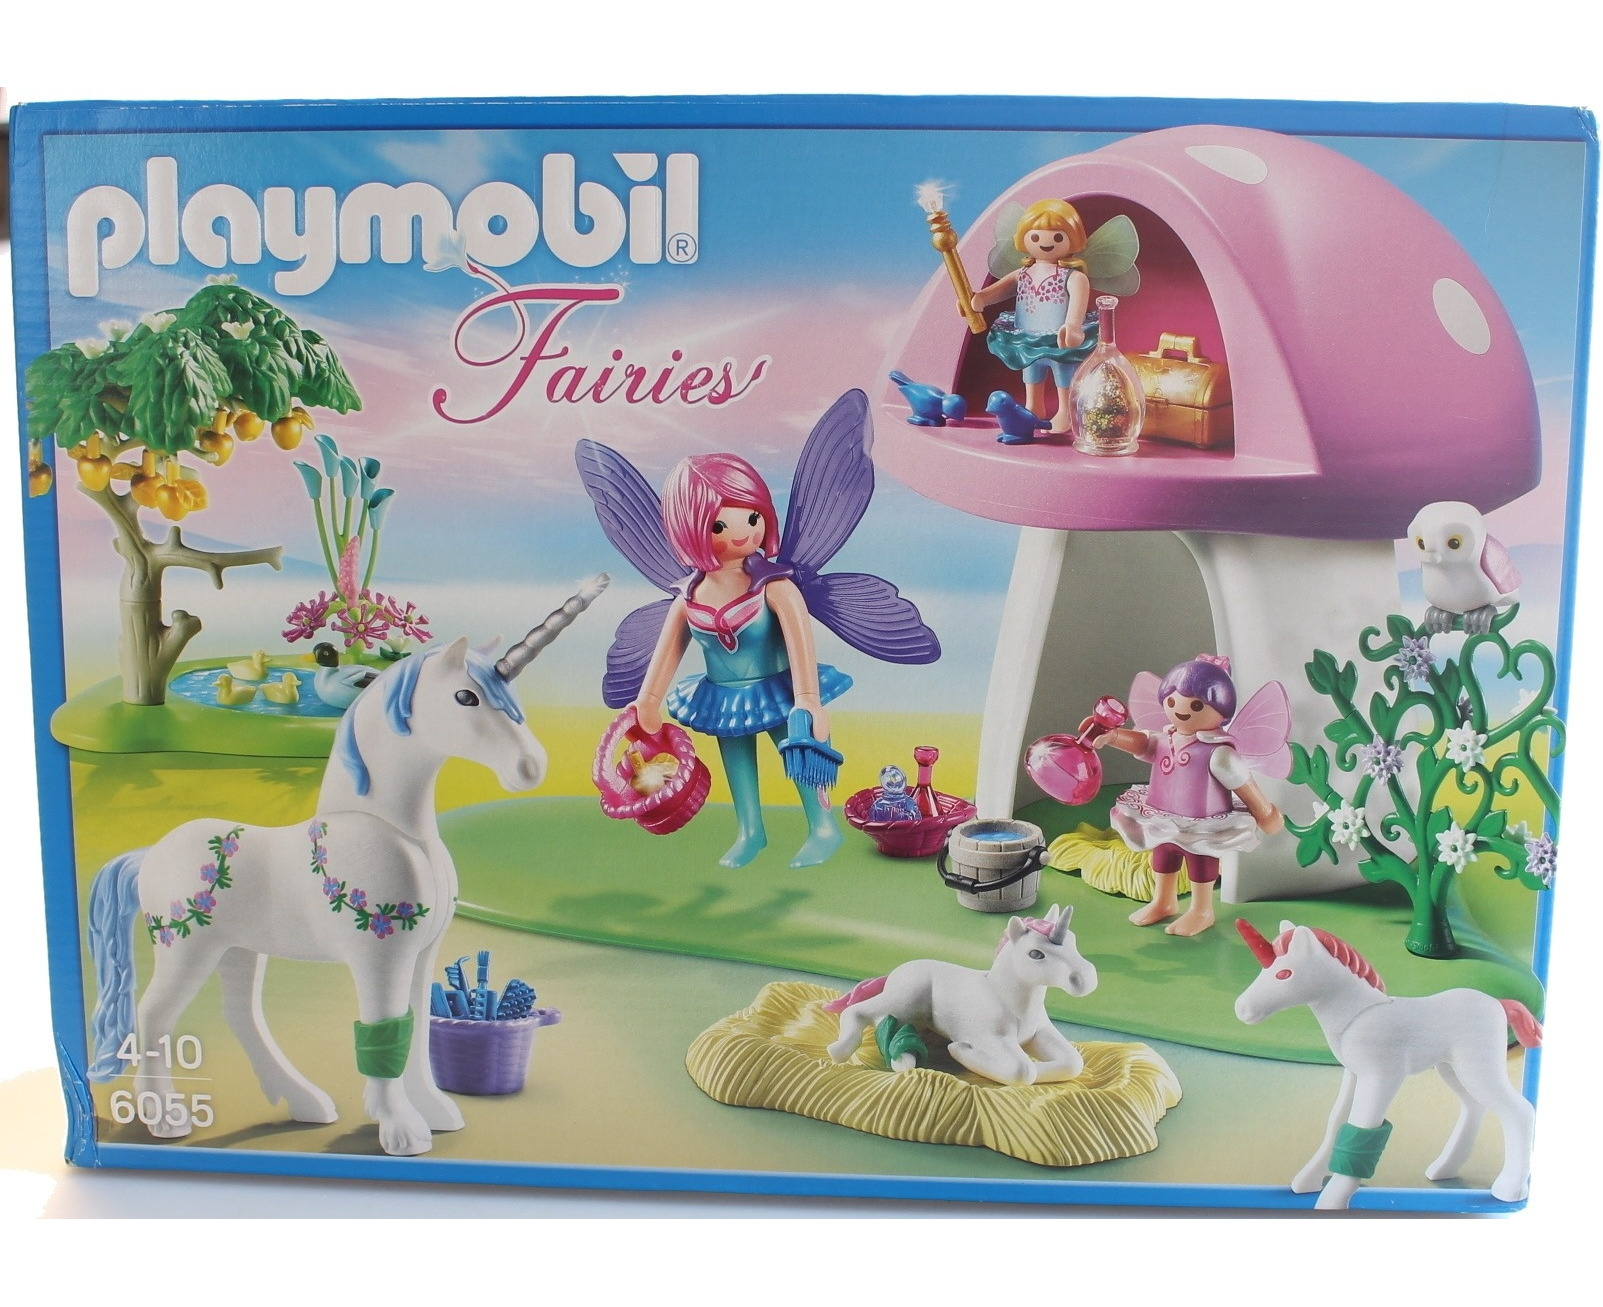 Playmobil 6055 Princess Fairies with Toadstool | Catch.com.au